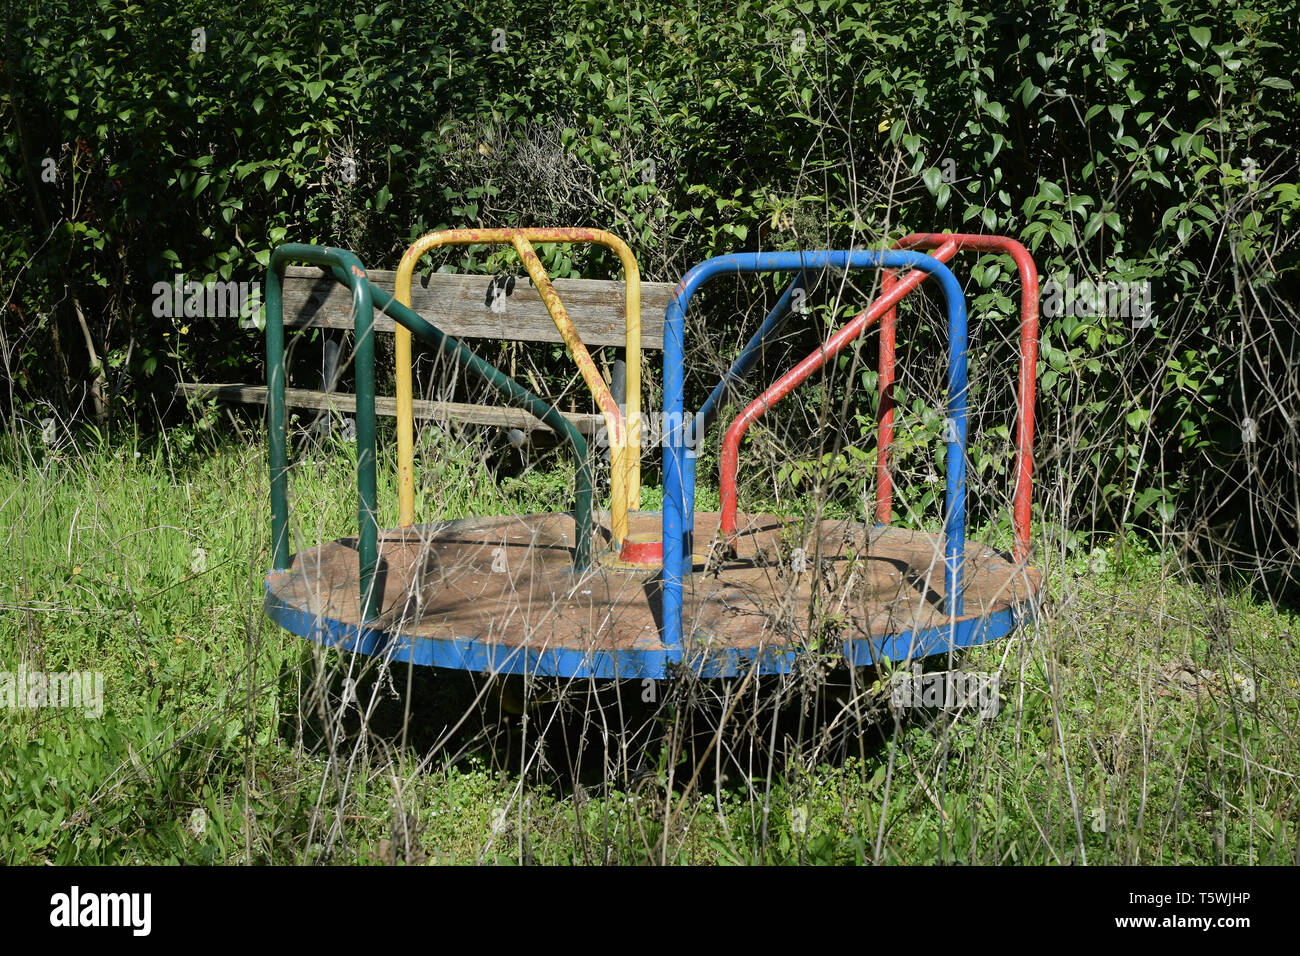 Alten rostigen Spielplatz Merry-go-round und überwachsen, verdorrte Pflanzen in verlassenen Park. Stockfoto